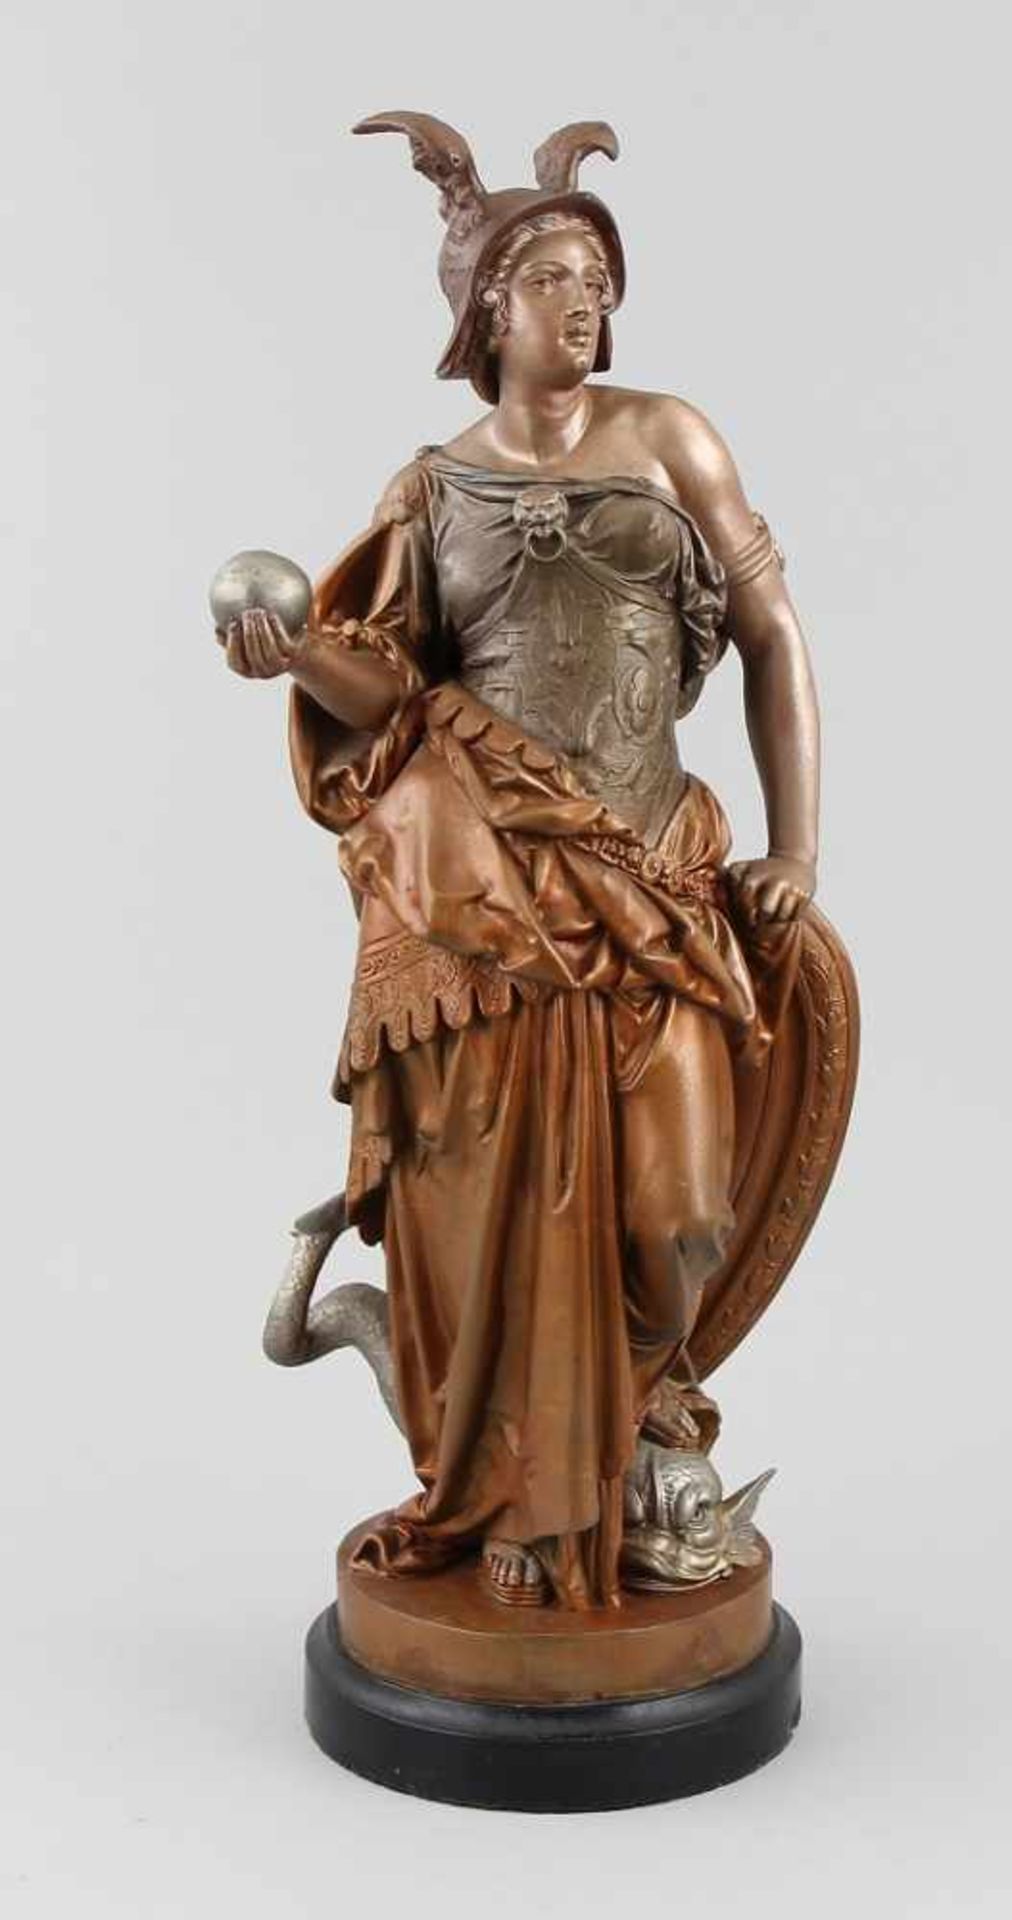 Carrier, Auguste Joseph (Französischer Bildhauer, 1800 - 1875)